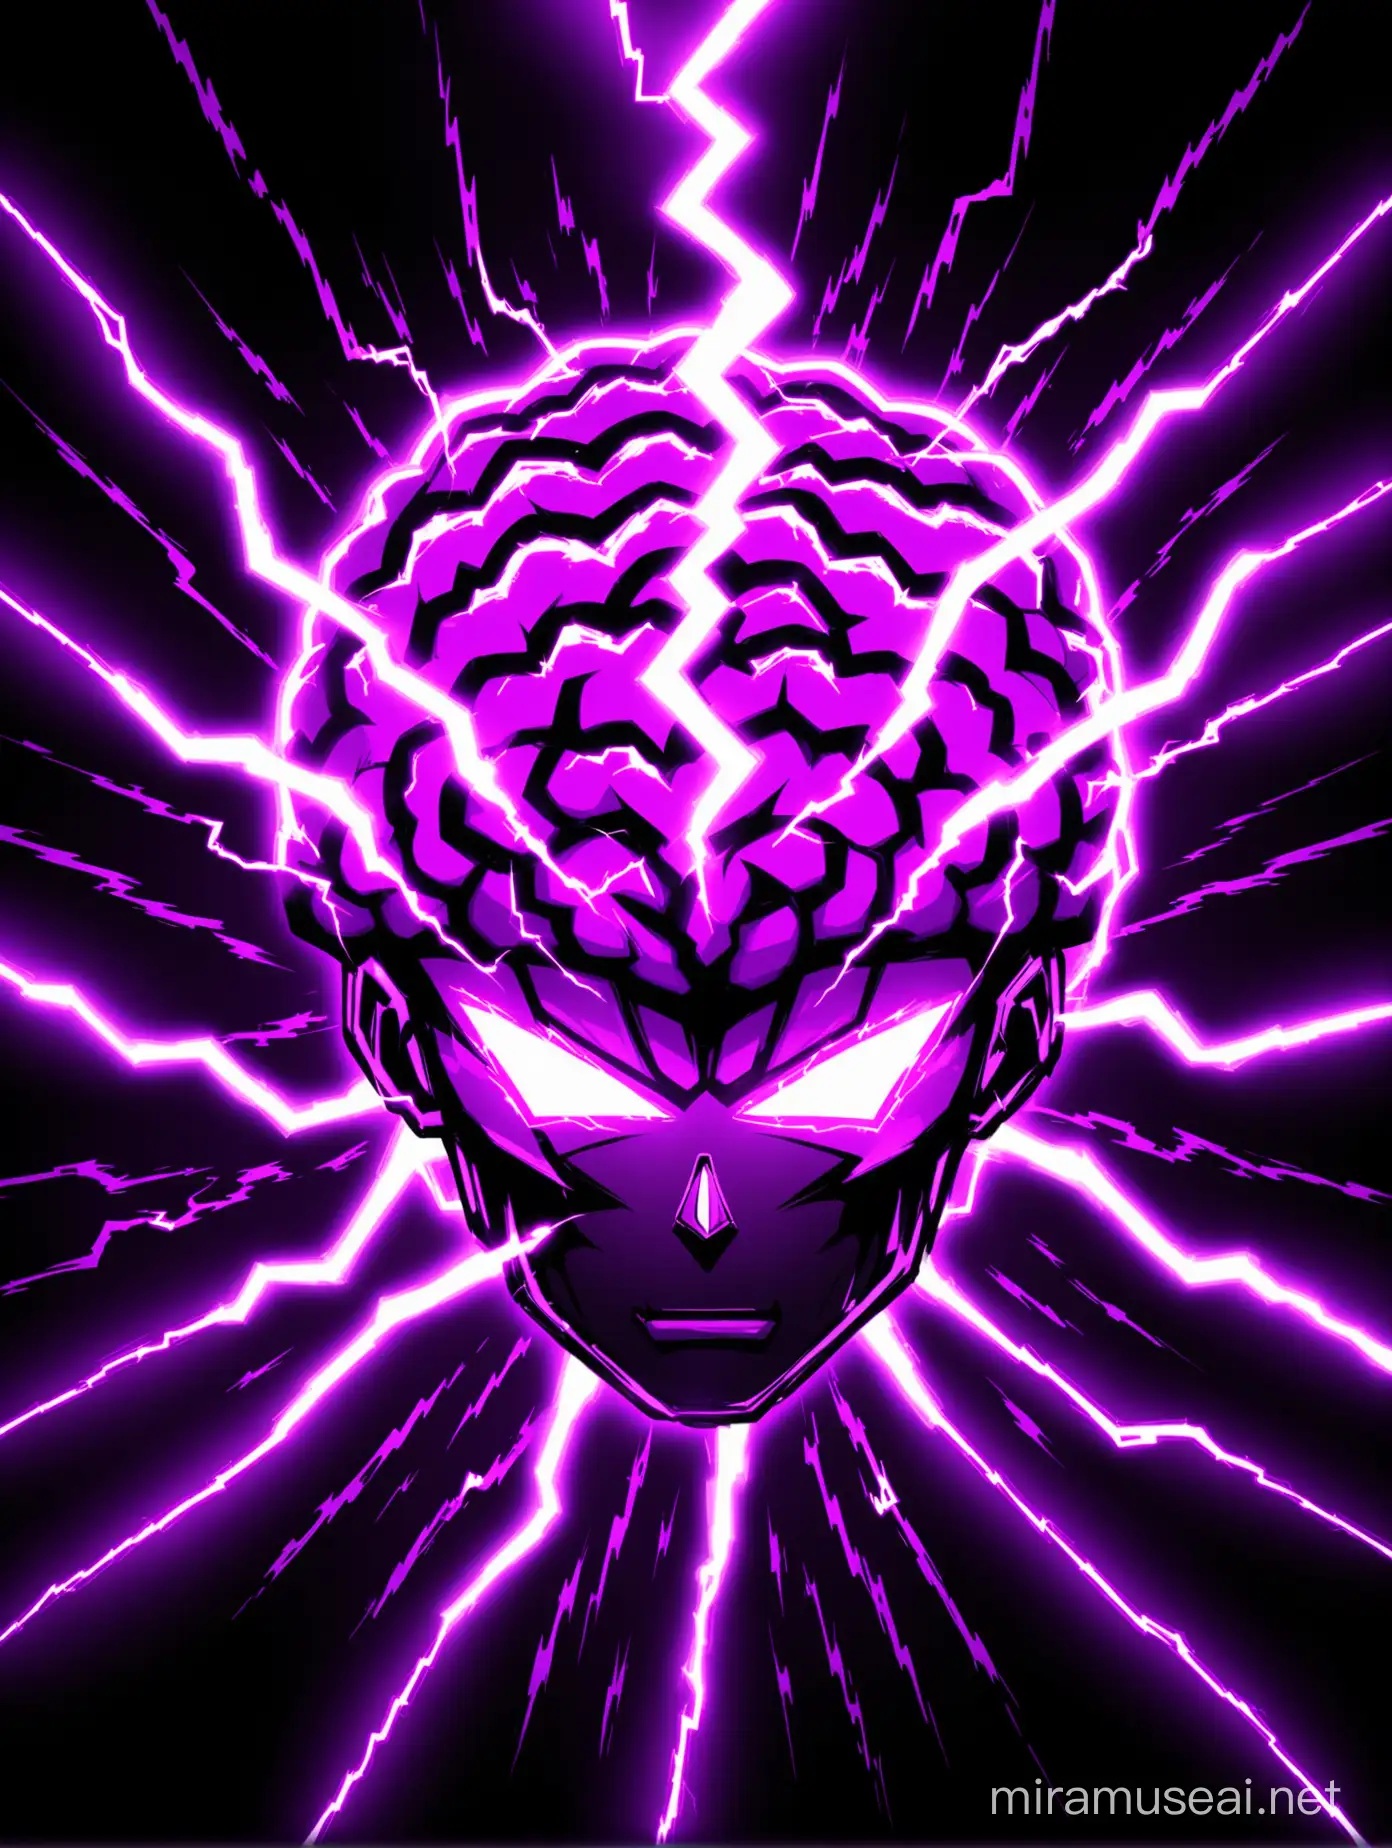 Vibrant Neon Purple Lightning Brain Illuminated in Dark Background